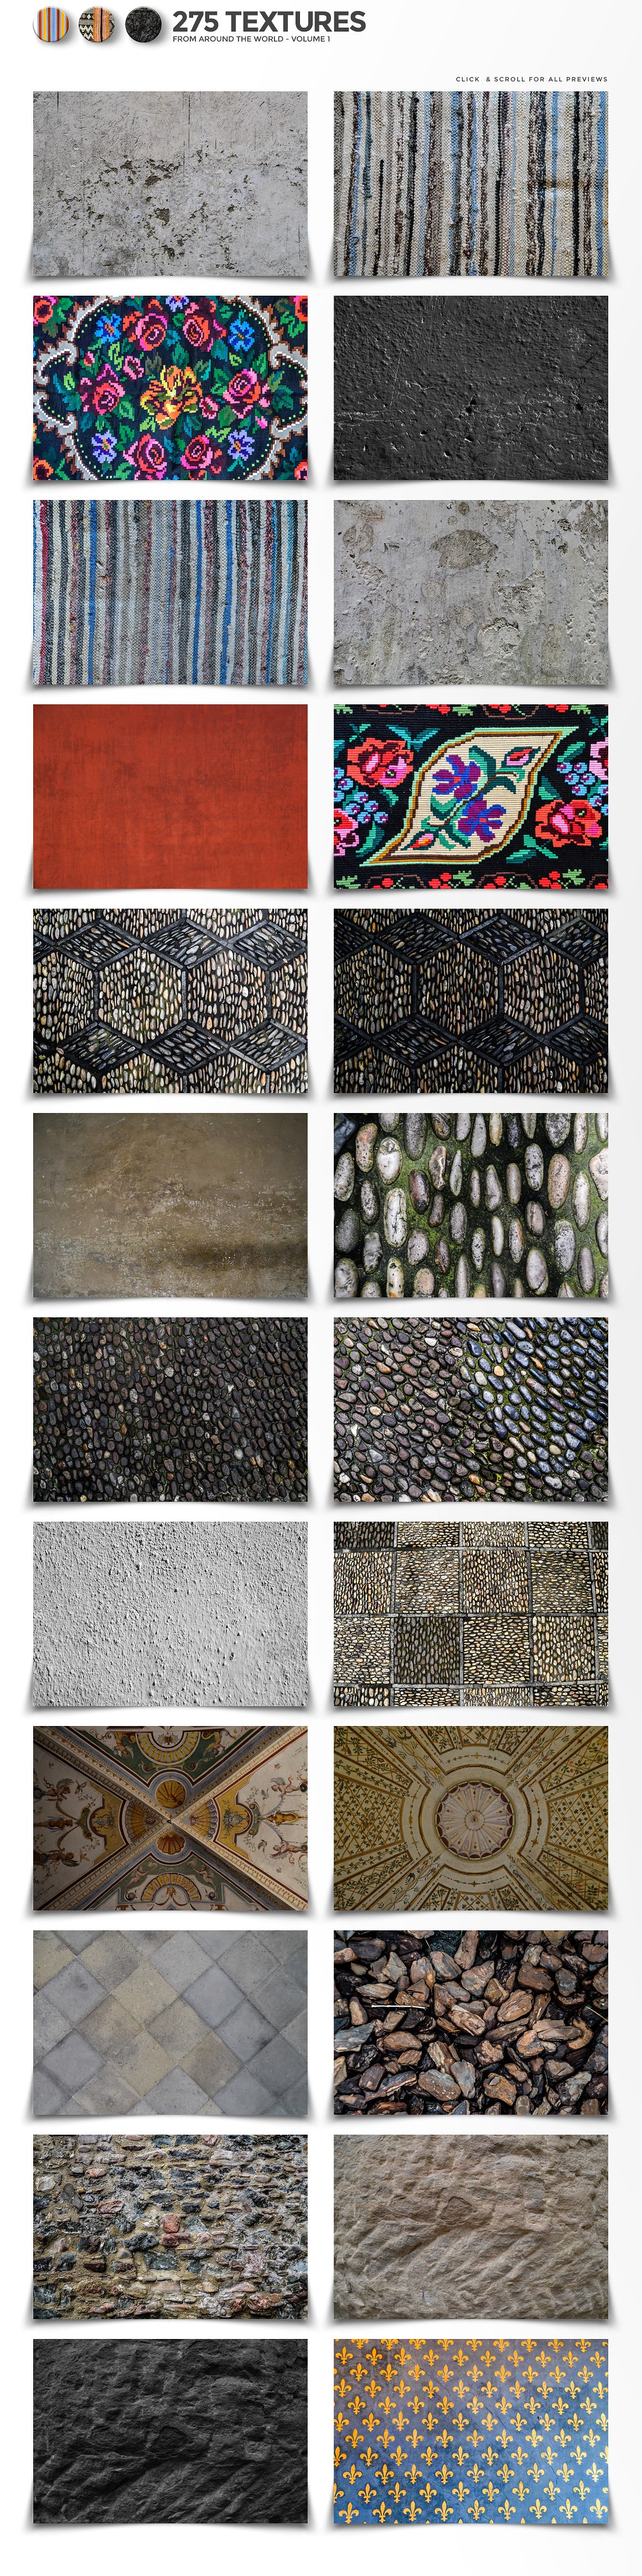 275+来自世界各地的墙壁超清纹理素材合集包 Texture